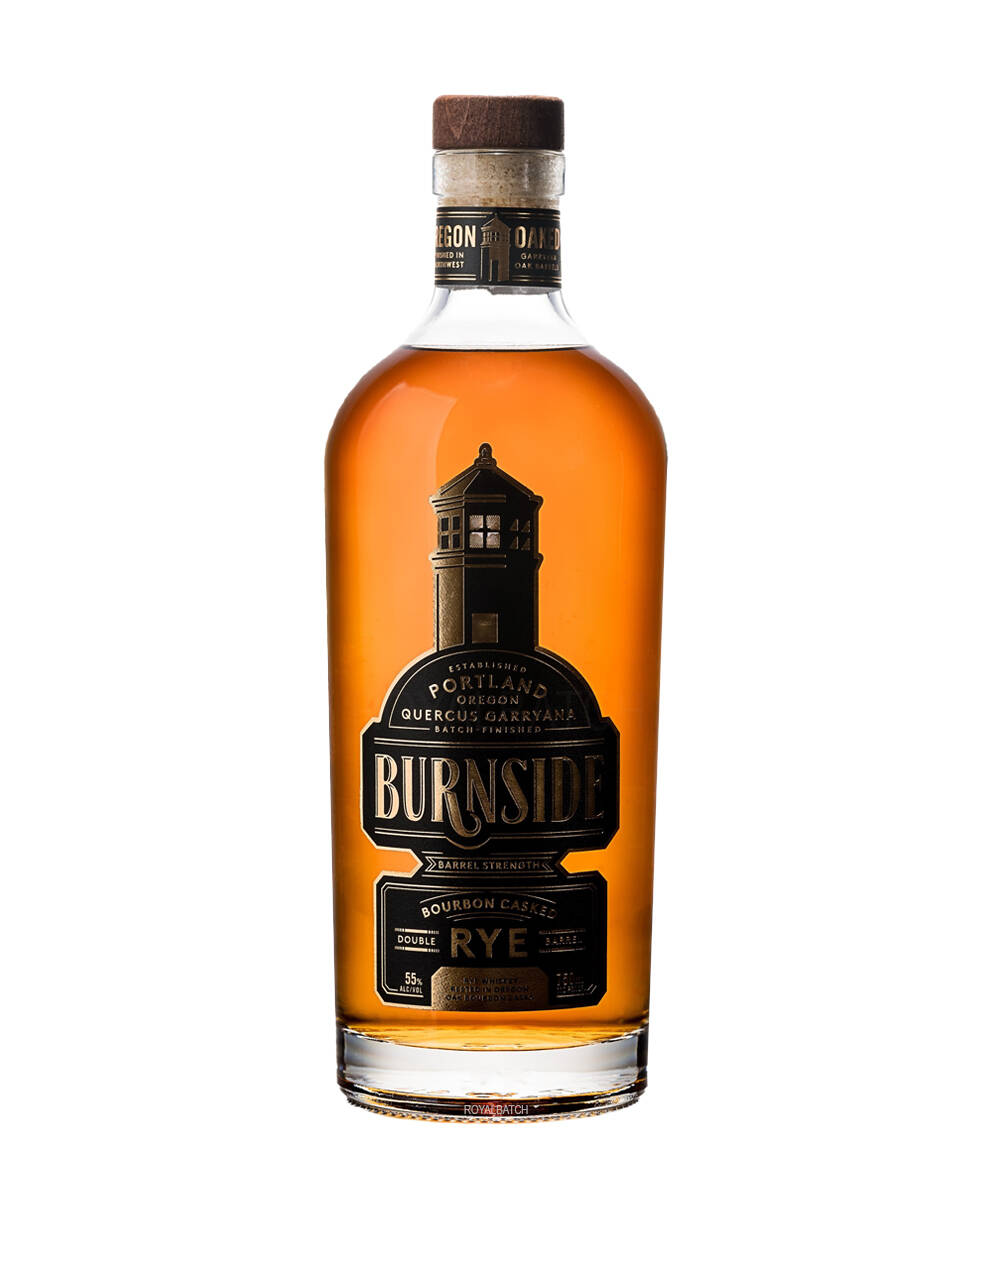 Burnside Black Barrel Strength Rye Whiskey